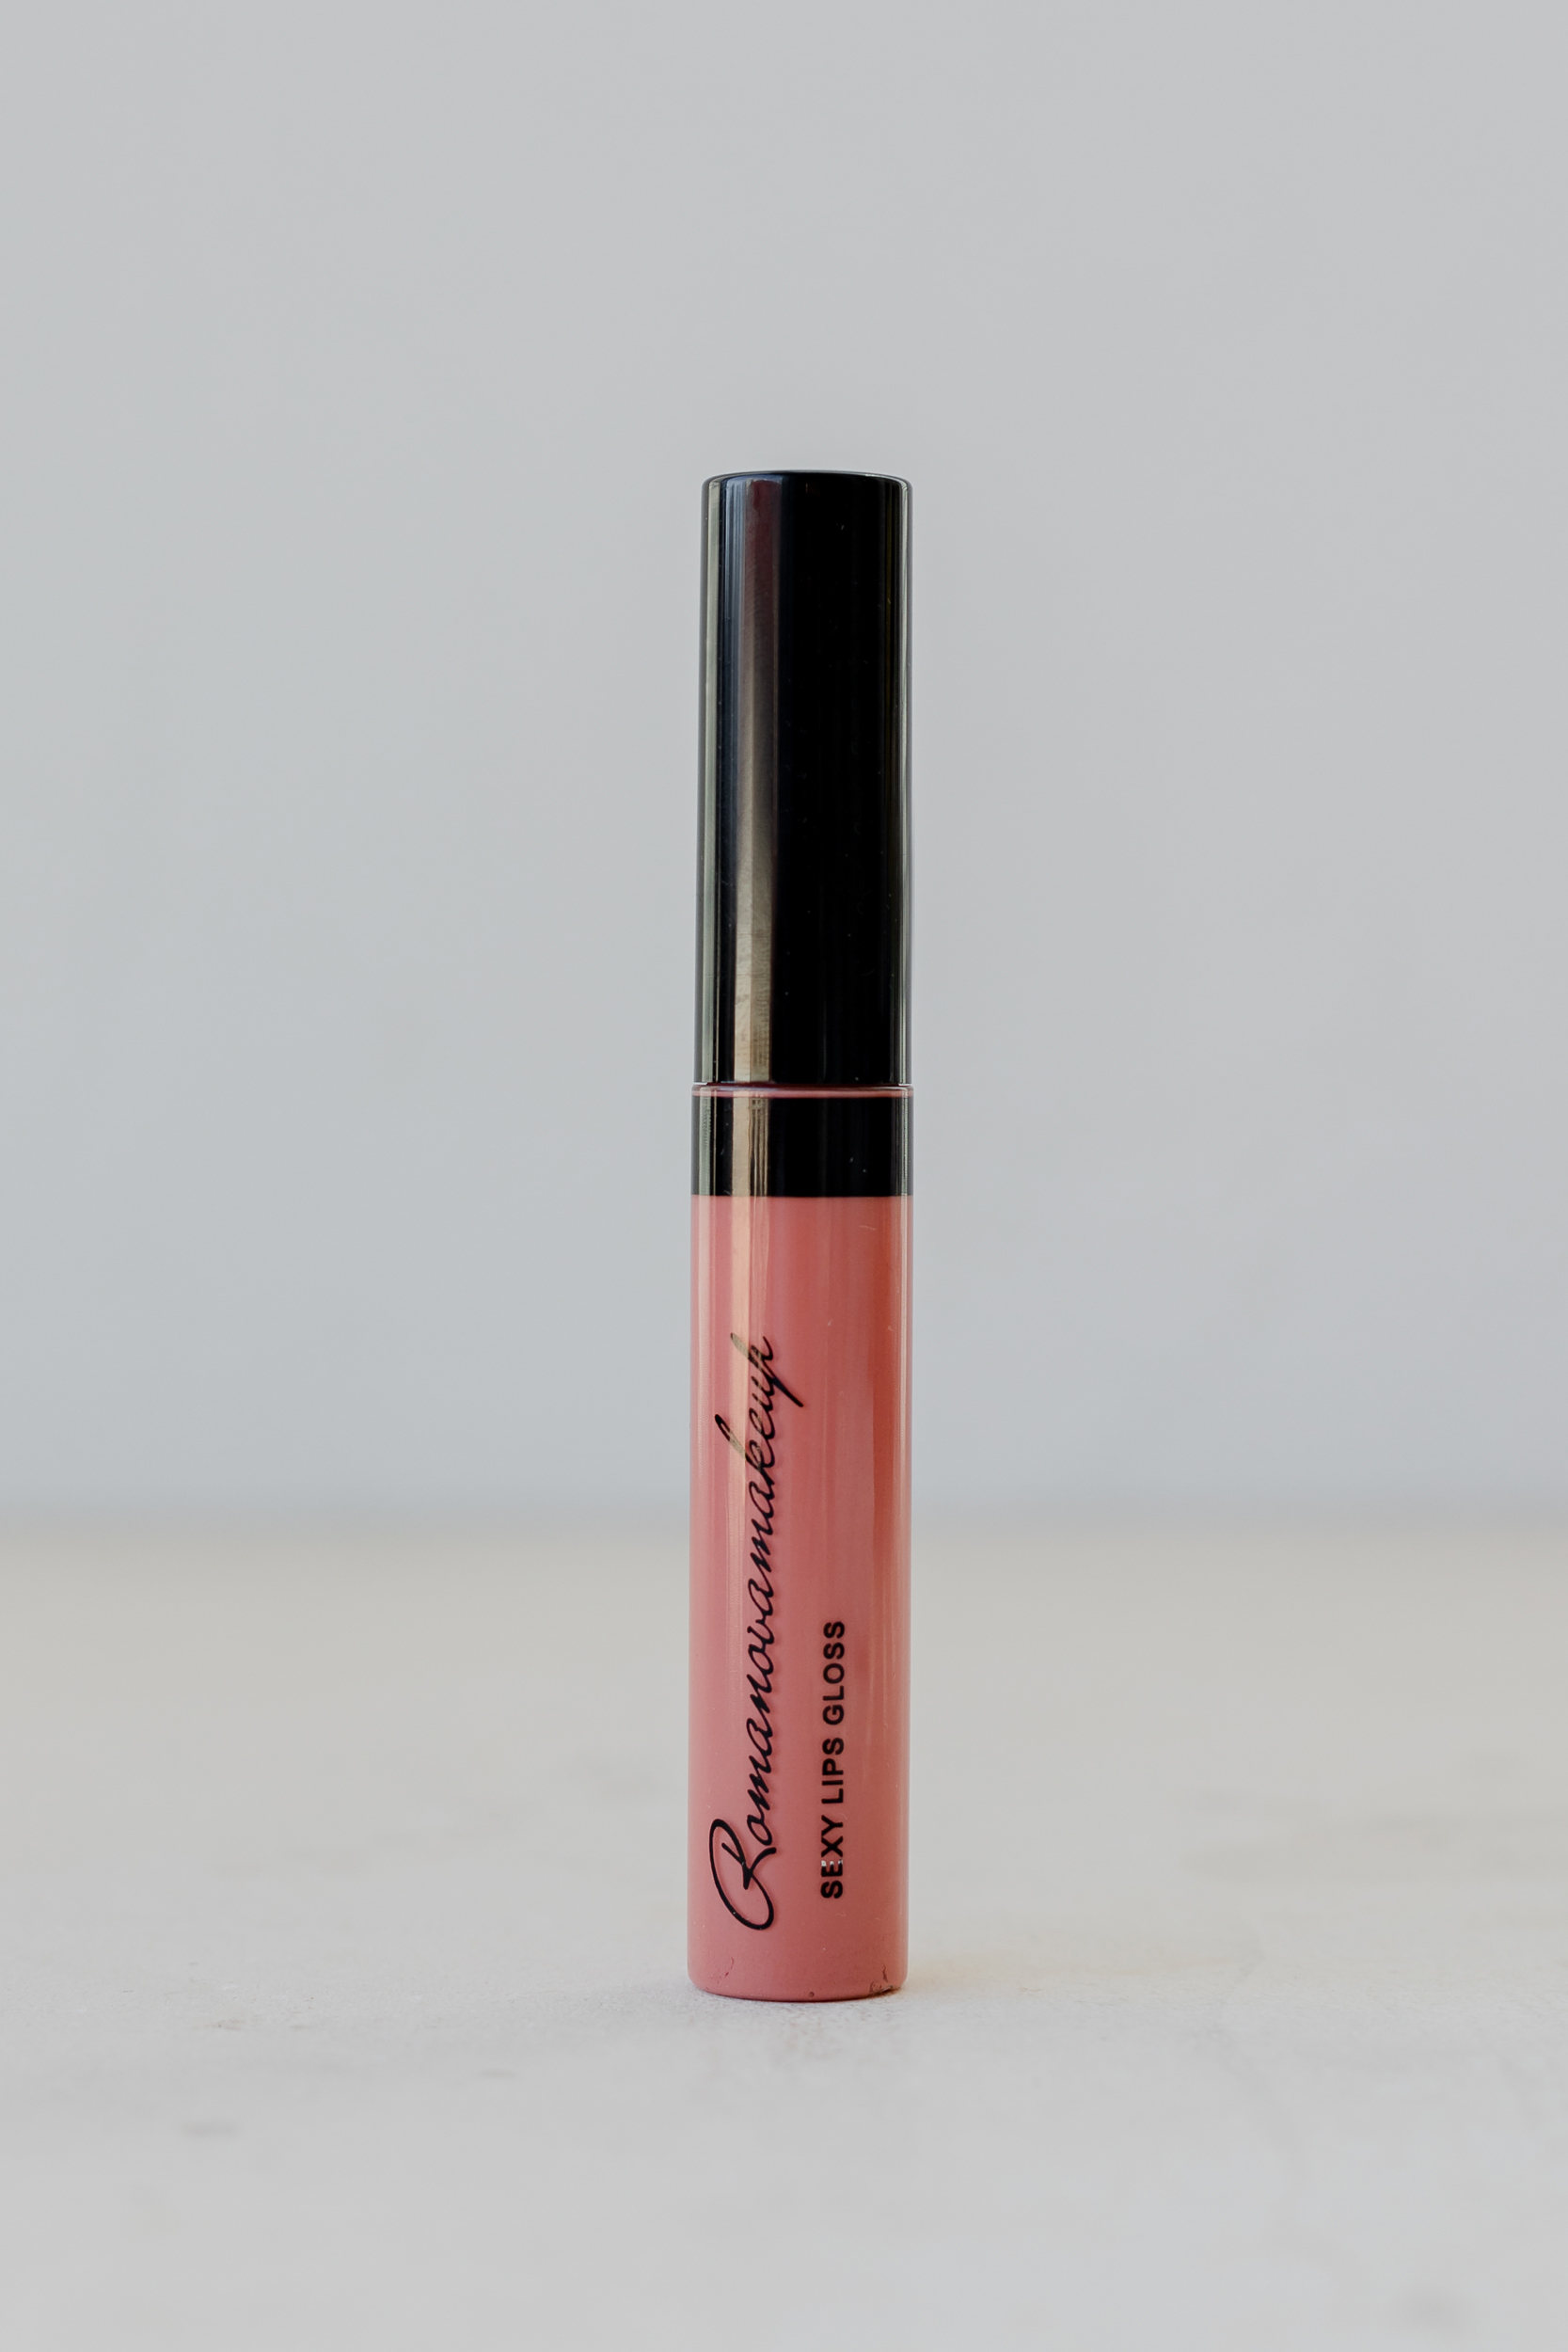 Роскошный блеск для губ, который и правда секси Romanovamakeup Sexy Lips Gloss GLAMOROUS 8.5ml